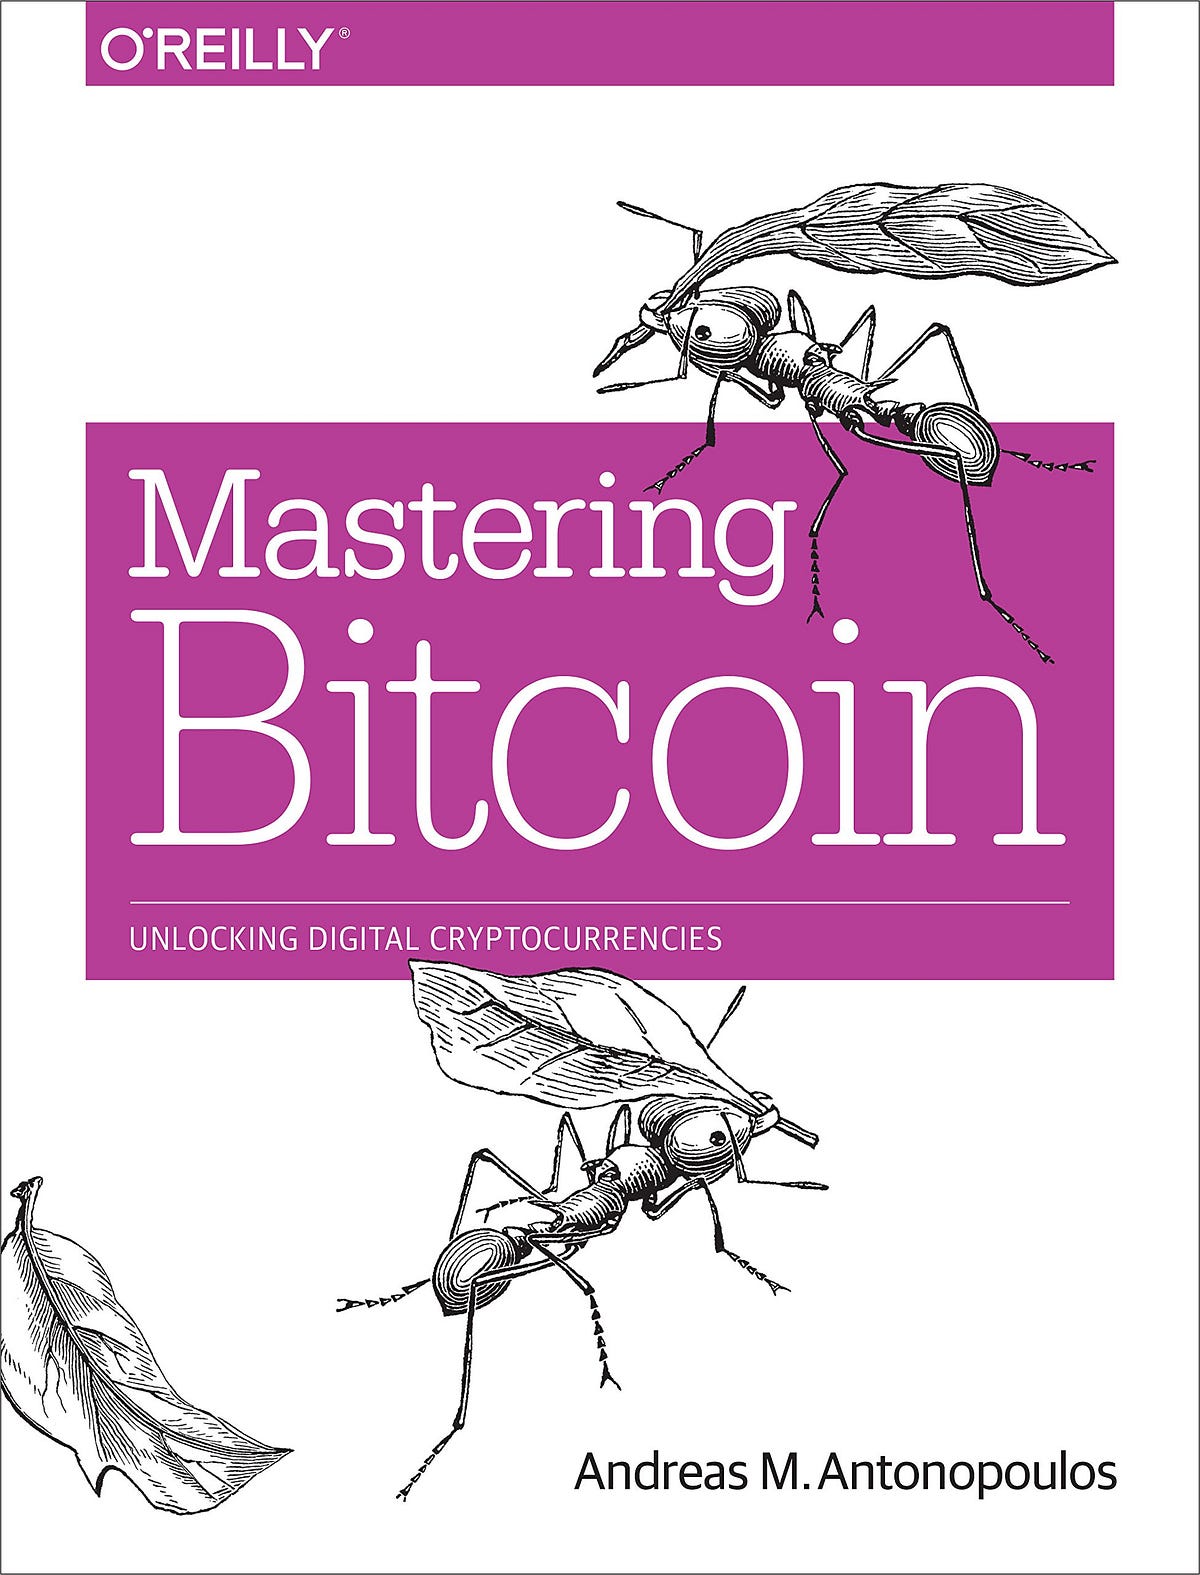 andreas antonopoulos mastering bitcoin